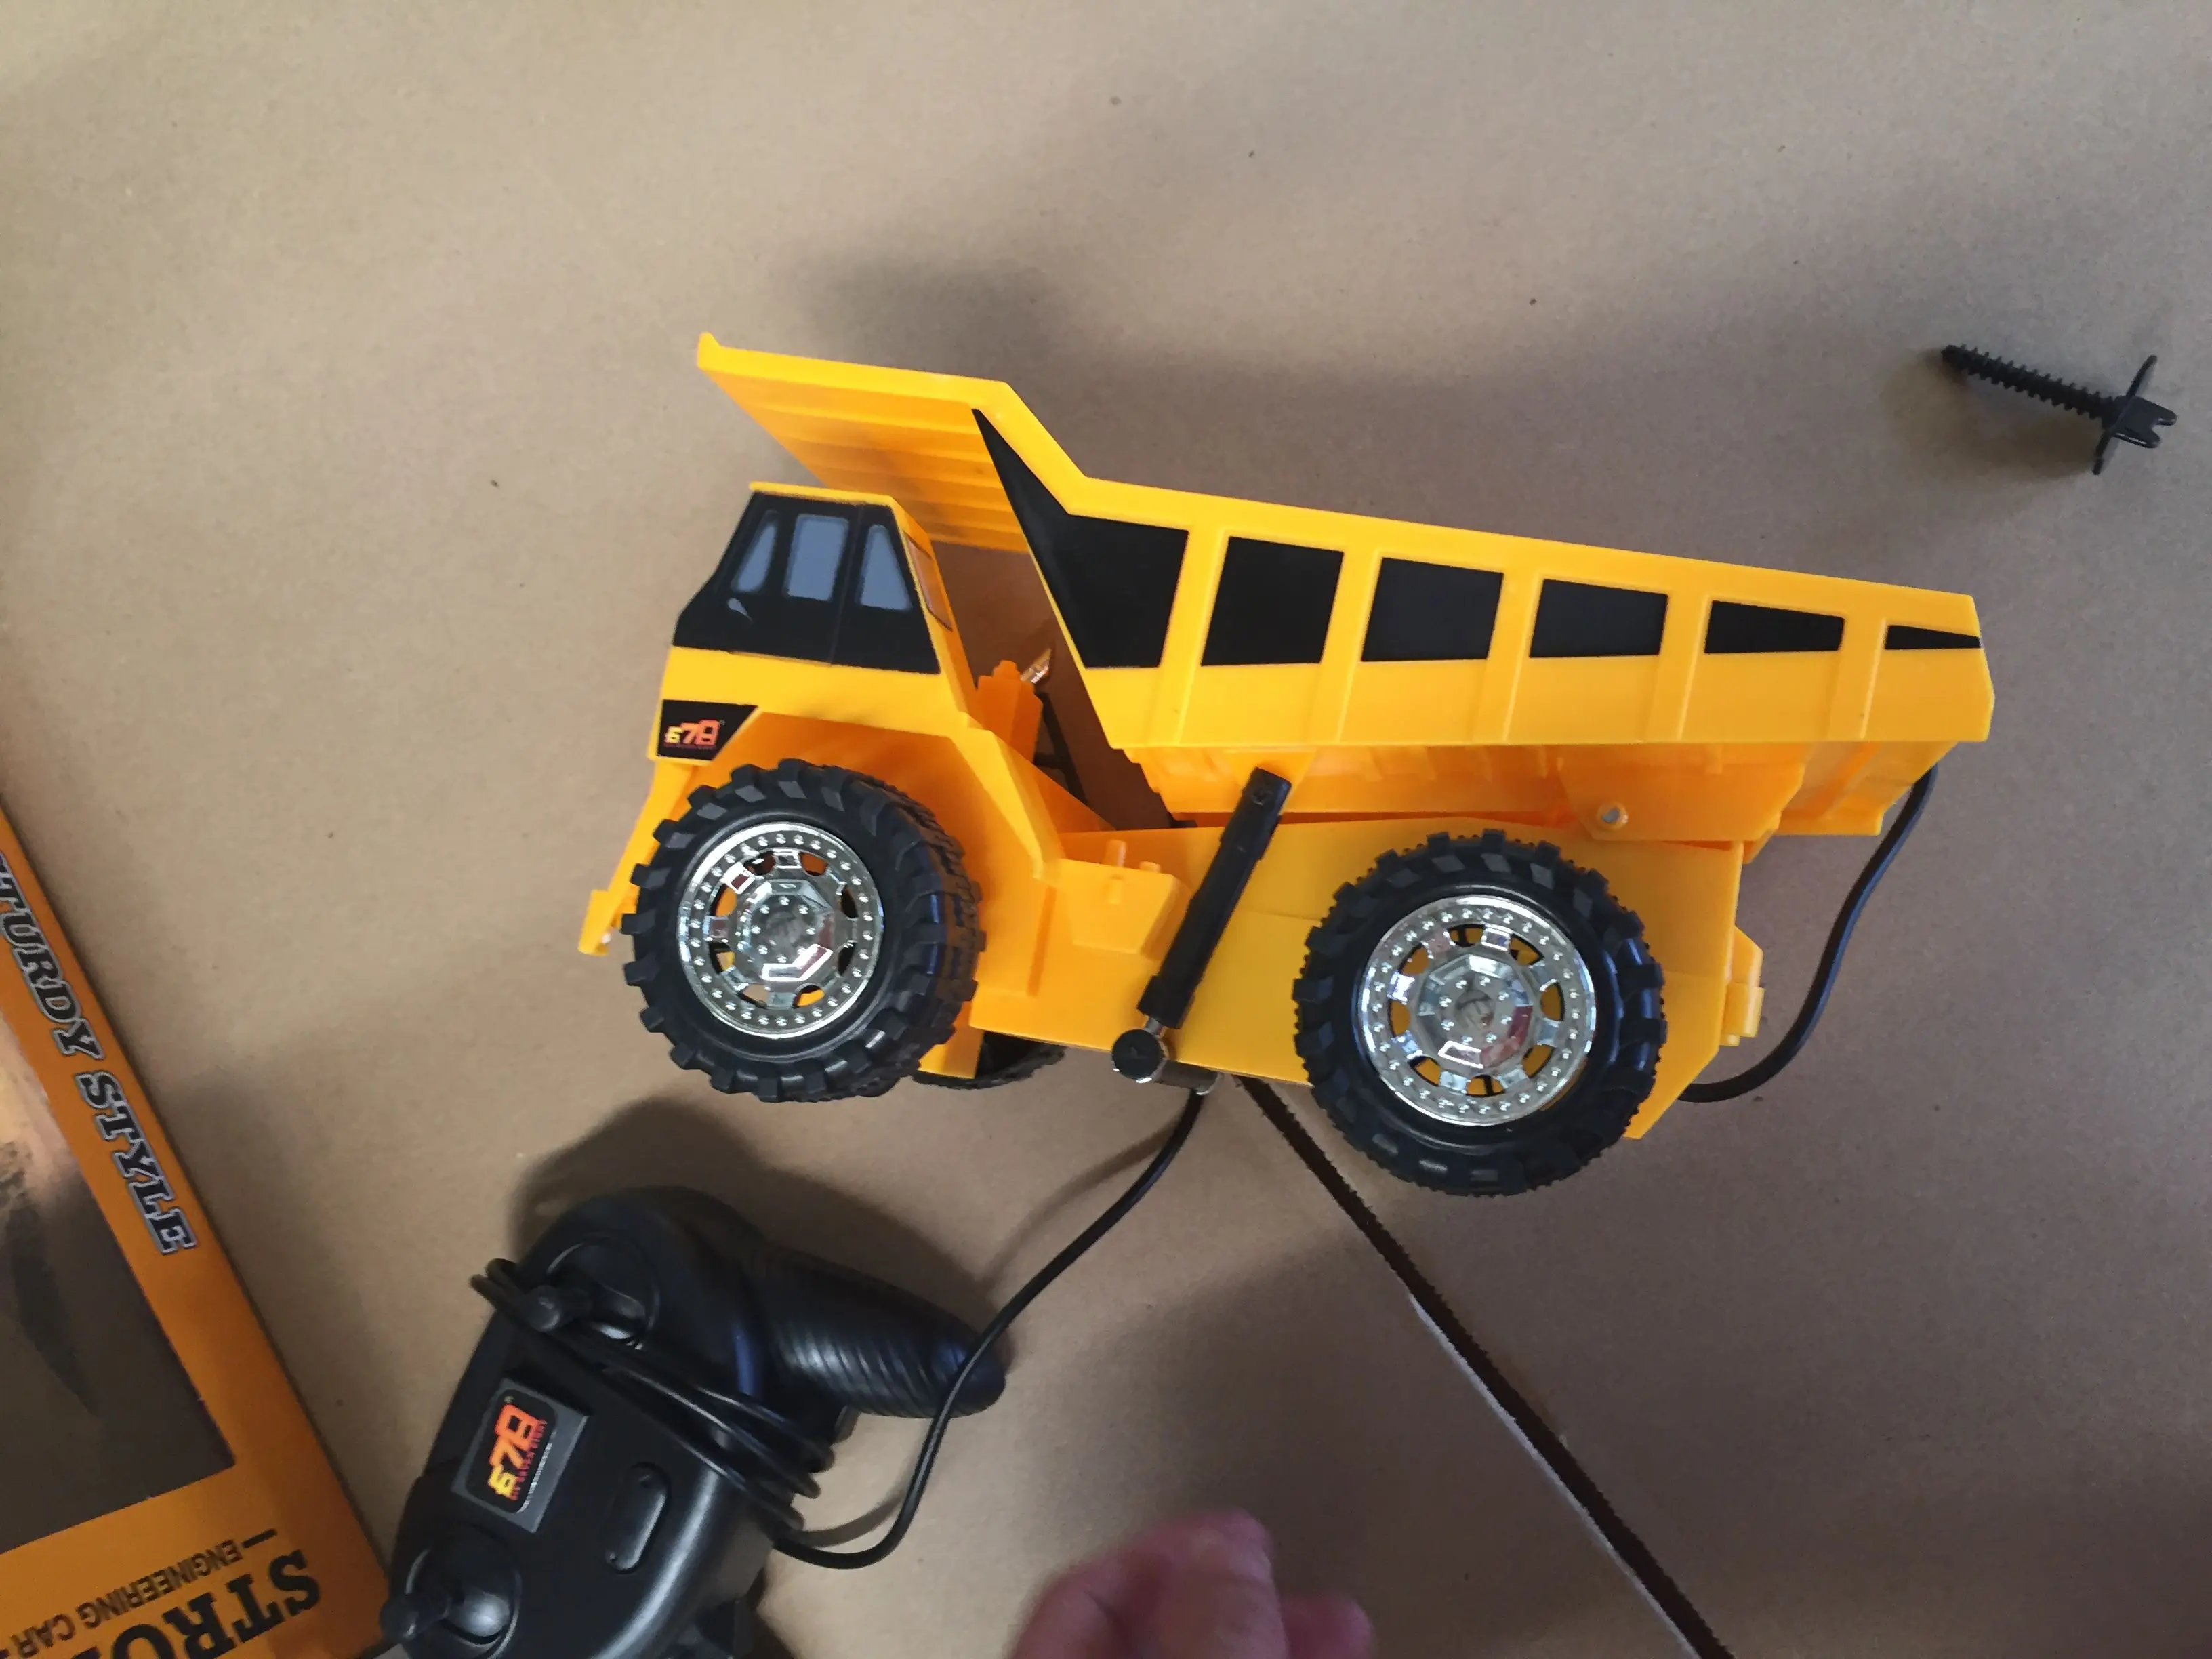 RC 4 колесный инженерный автомобиль игрушка модель провода управления дошкольного обучения для детей грузовики бульдозеры желтый